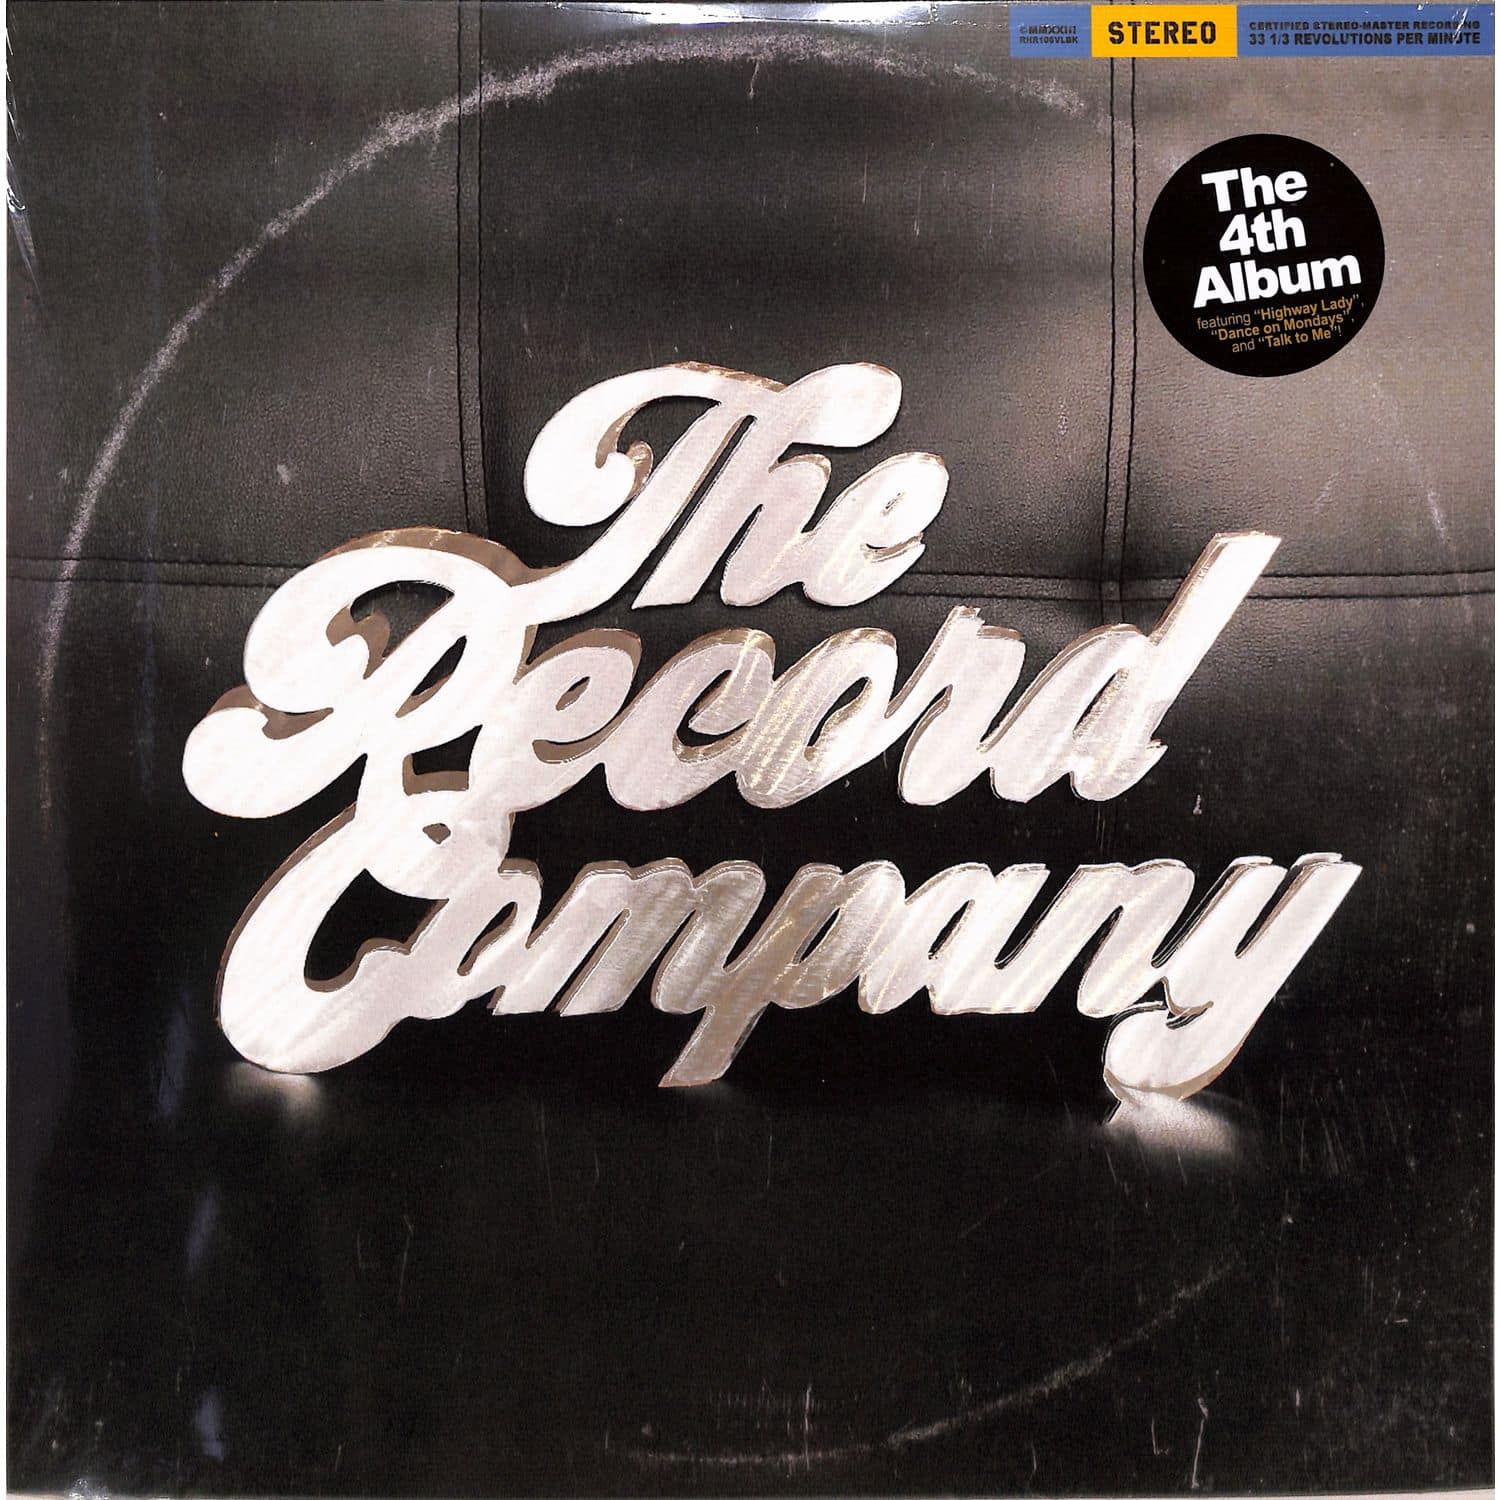 Record Company - 4TH ALBUM 